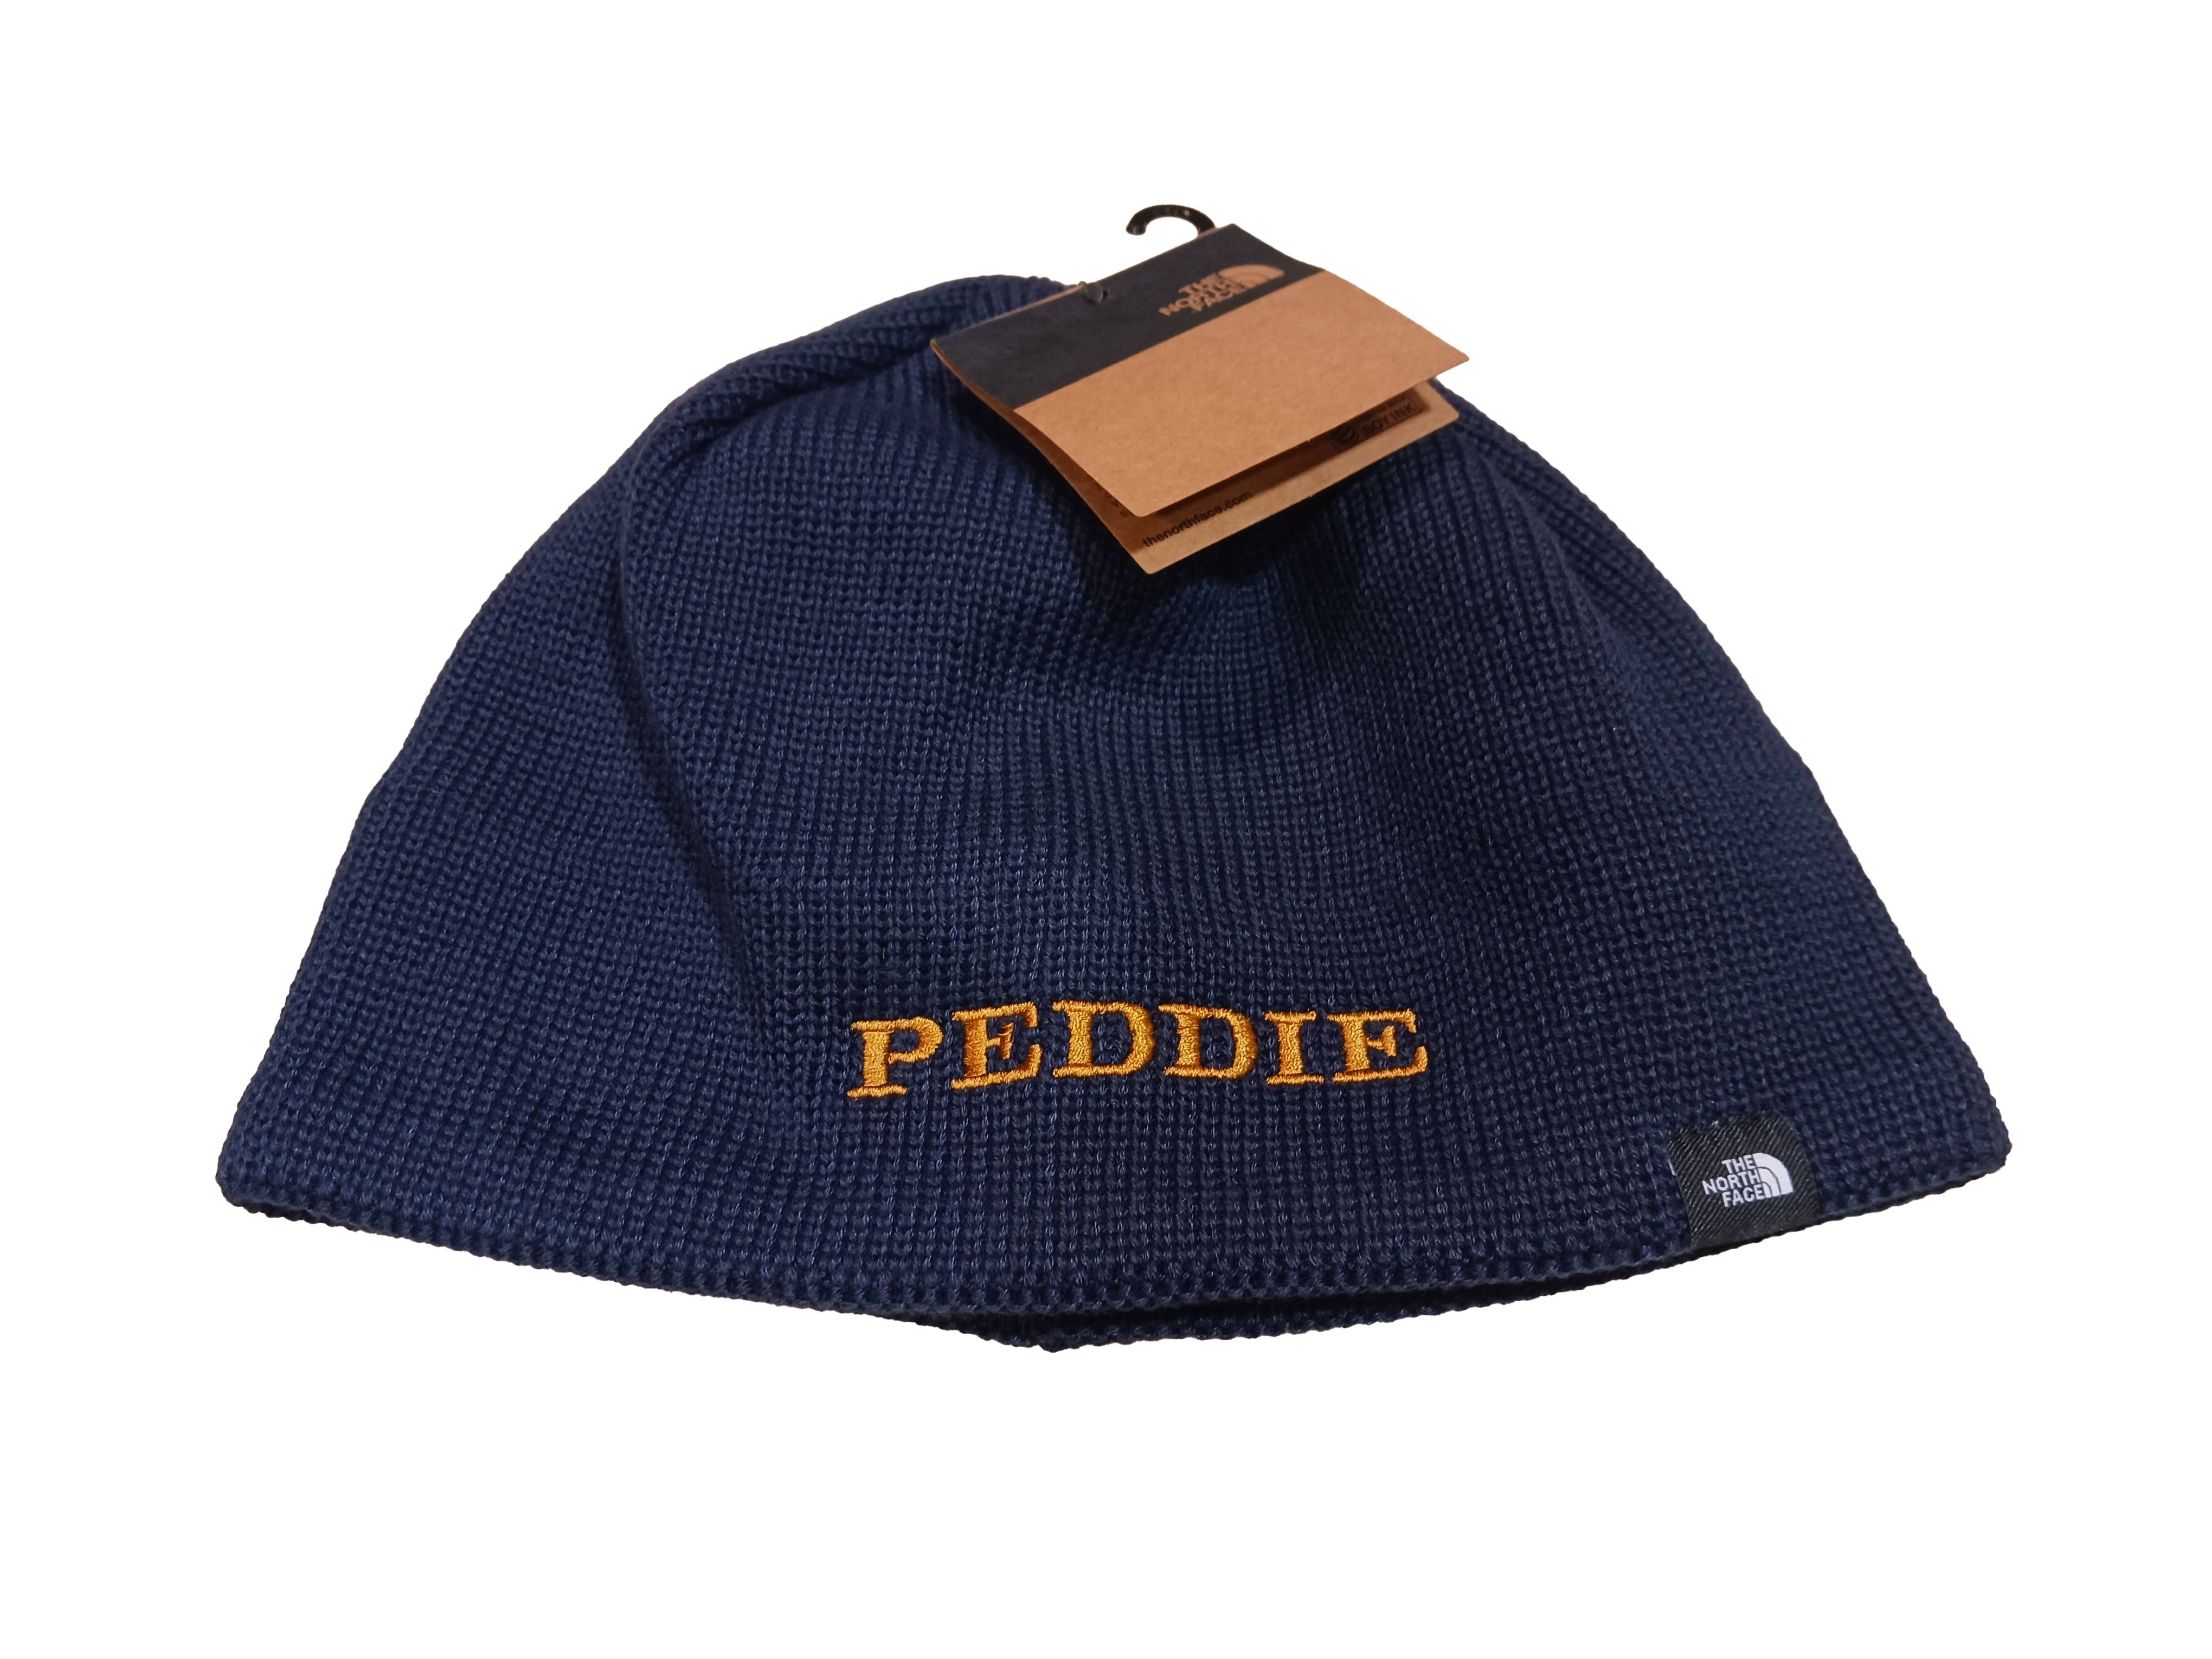 Peddie North Face Mountain Beanie Hat